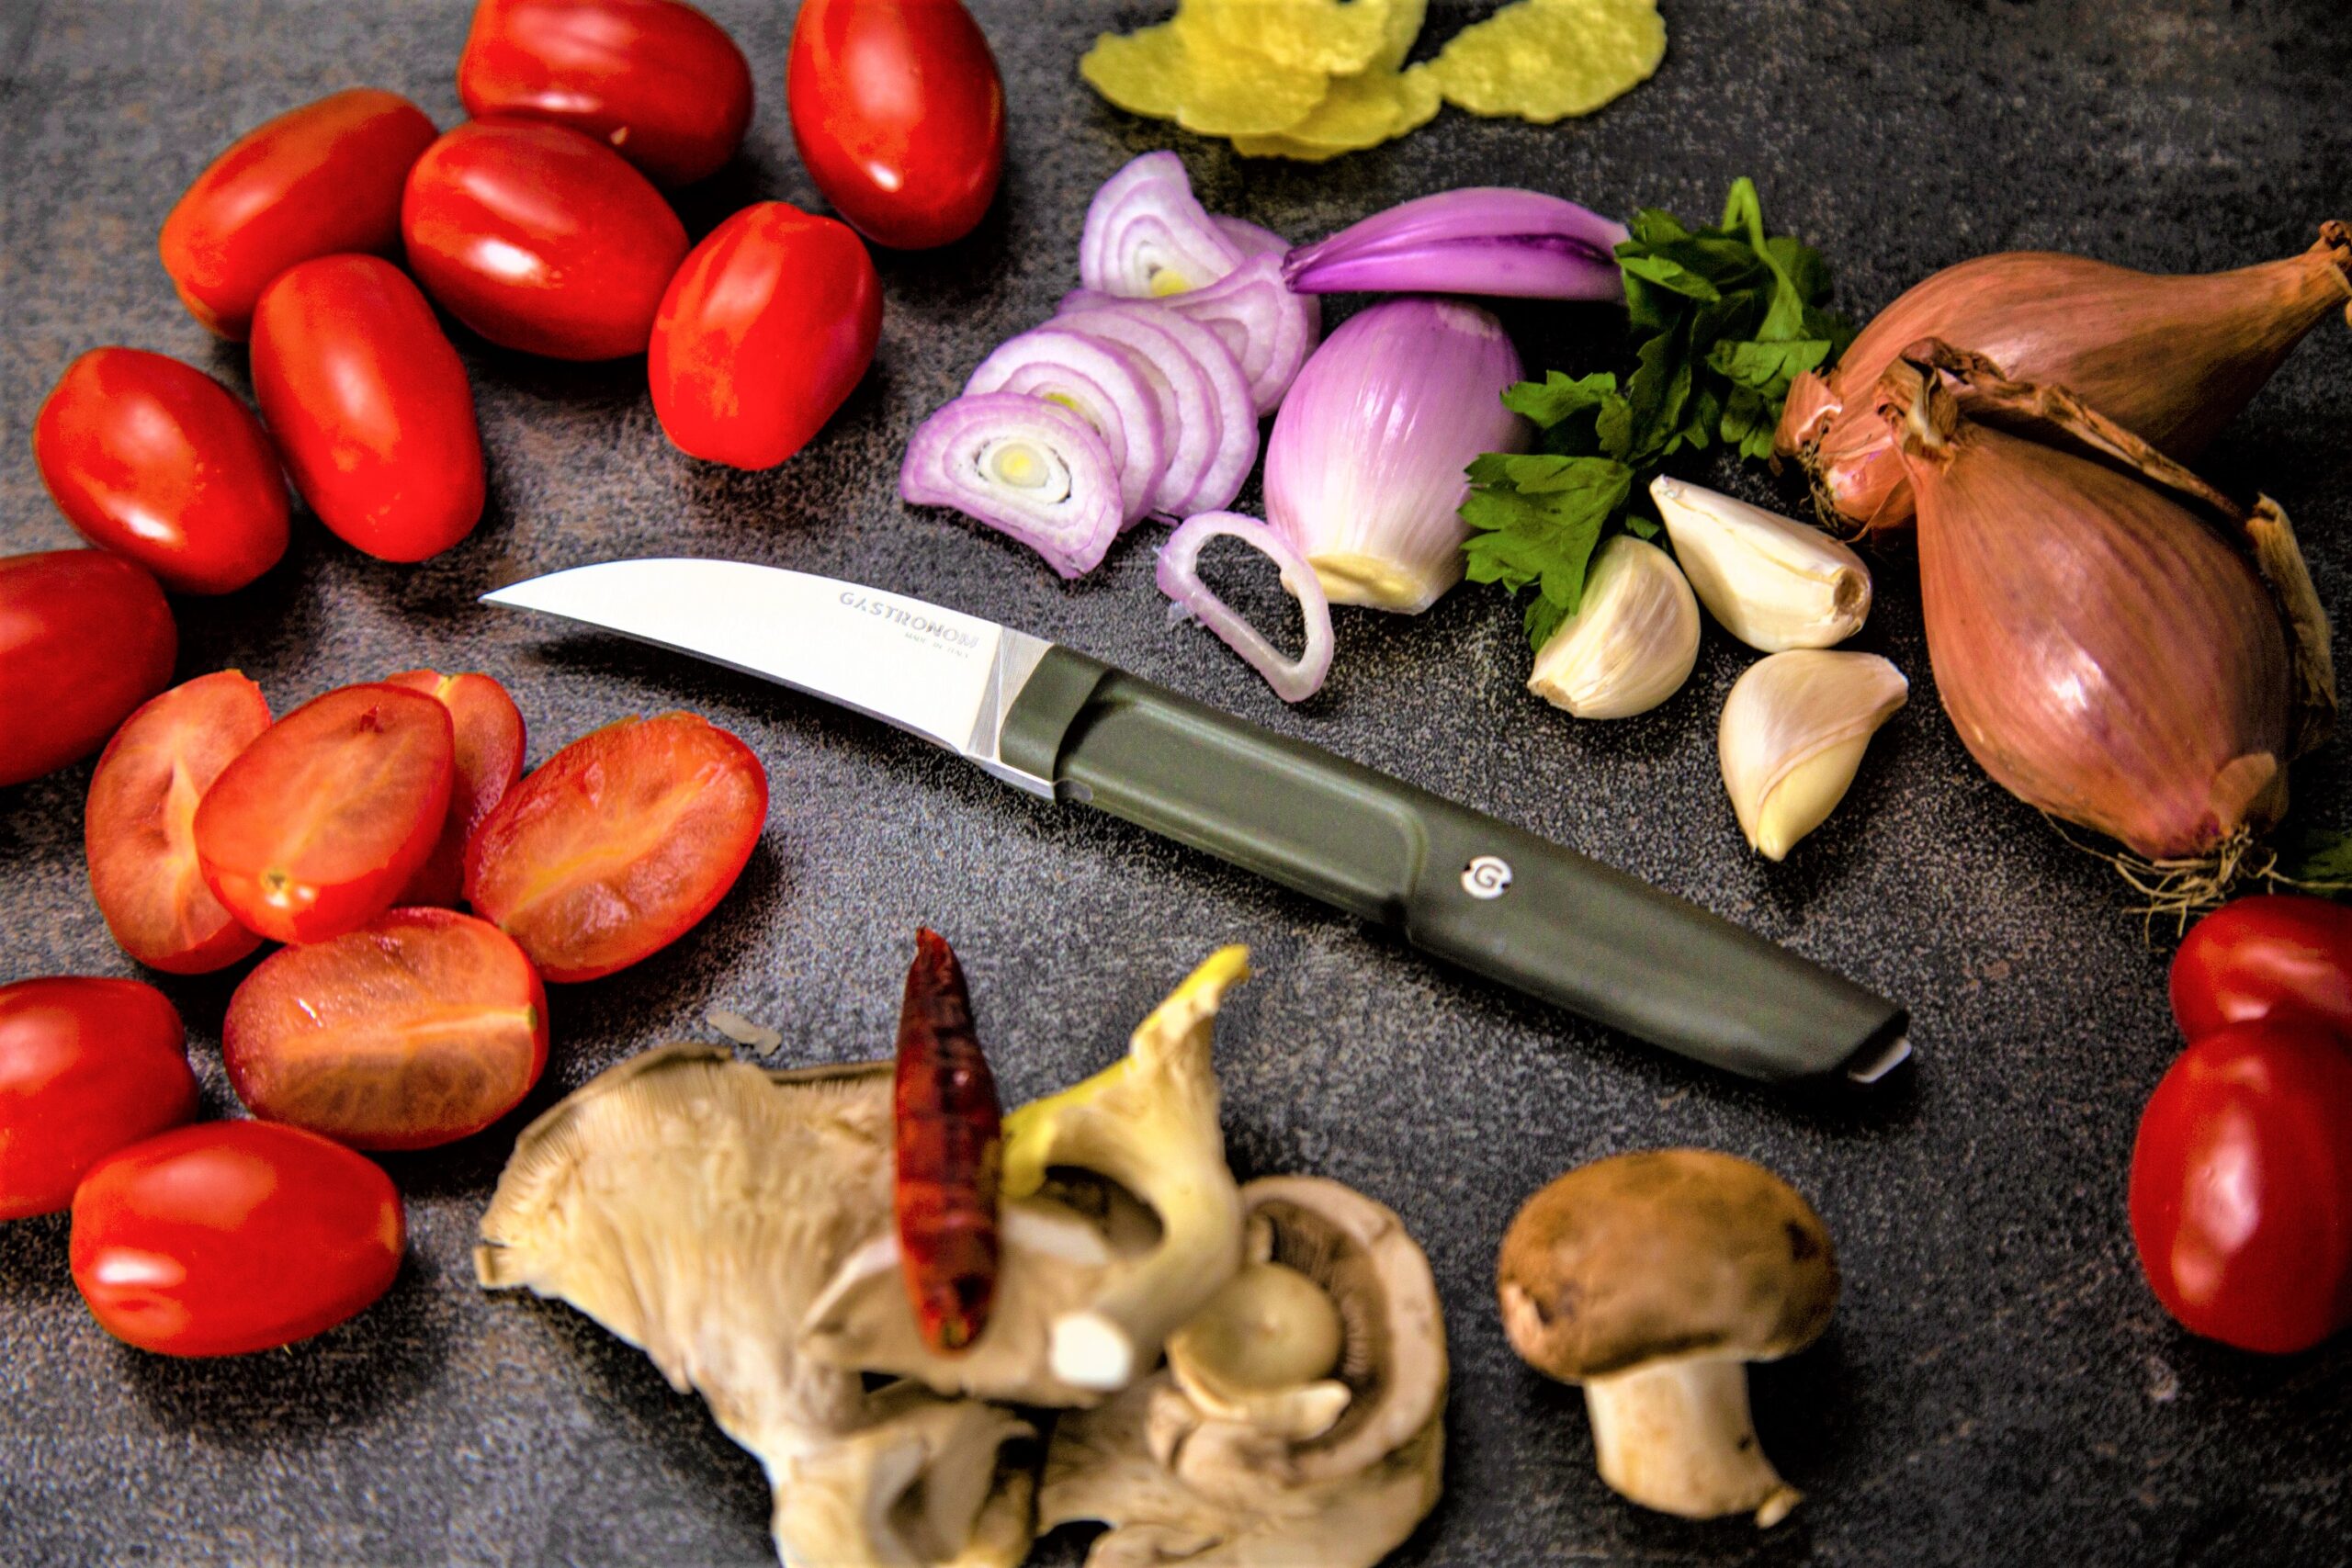 I nuovi coltelli Gastronom Made in Italy